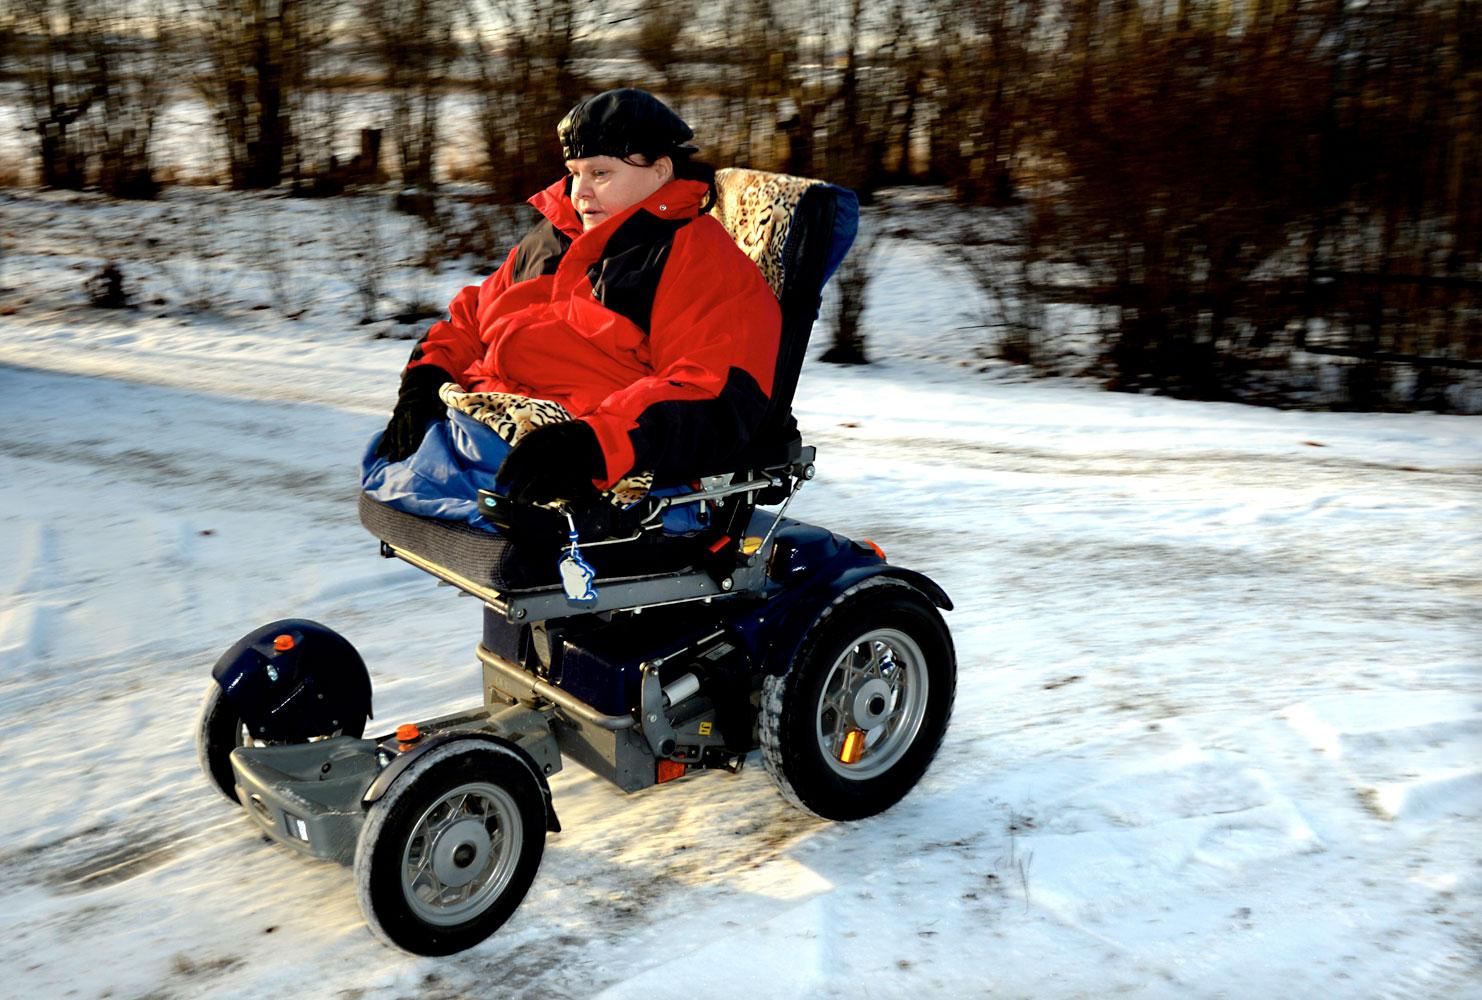 Används för lite. Mona Landgren använder sin rullstol för lite enligt Region Skåne – nu blir hon av med den.